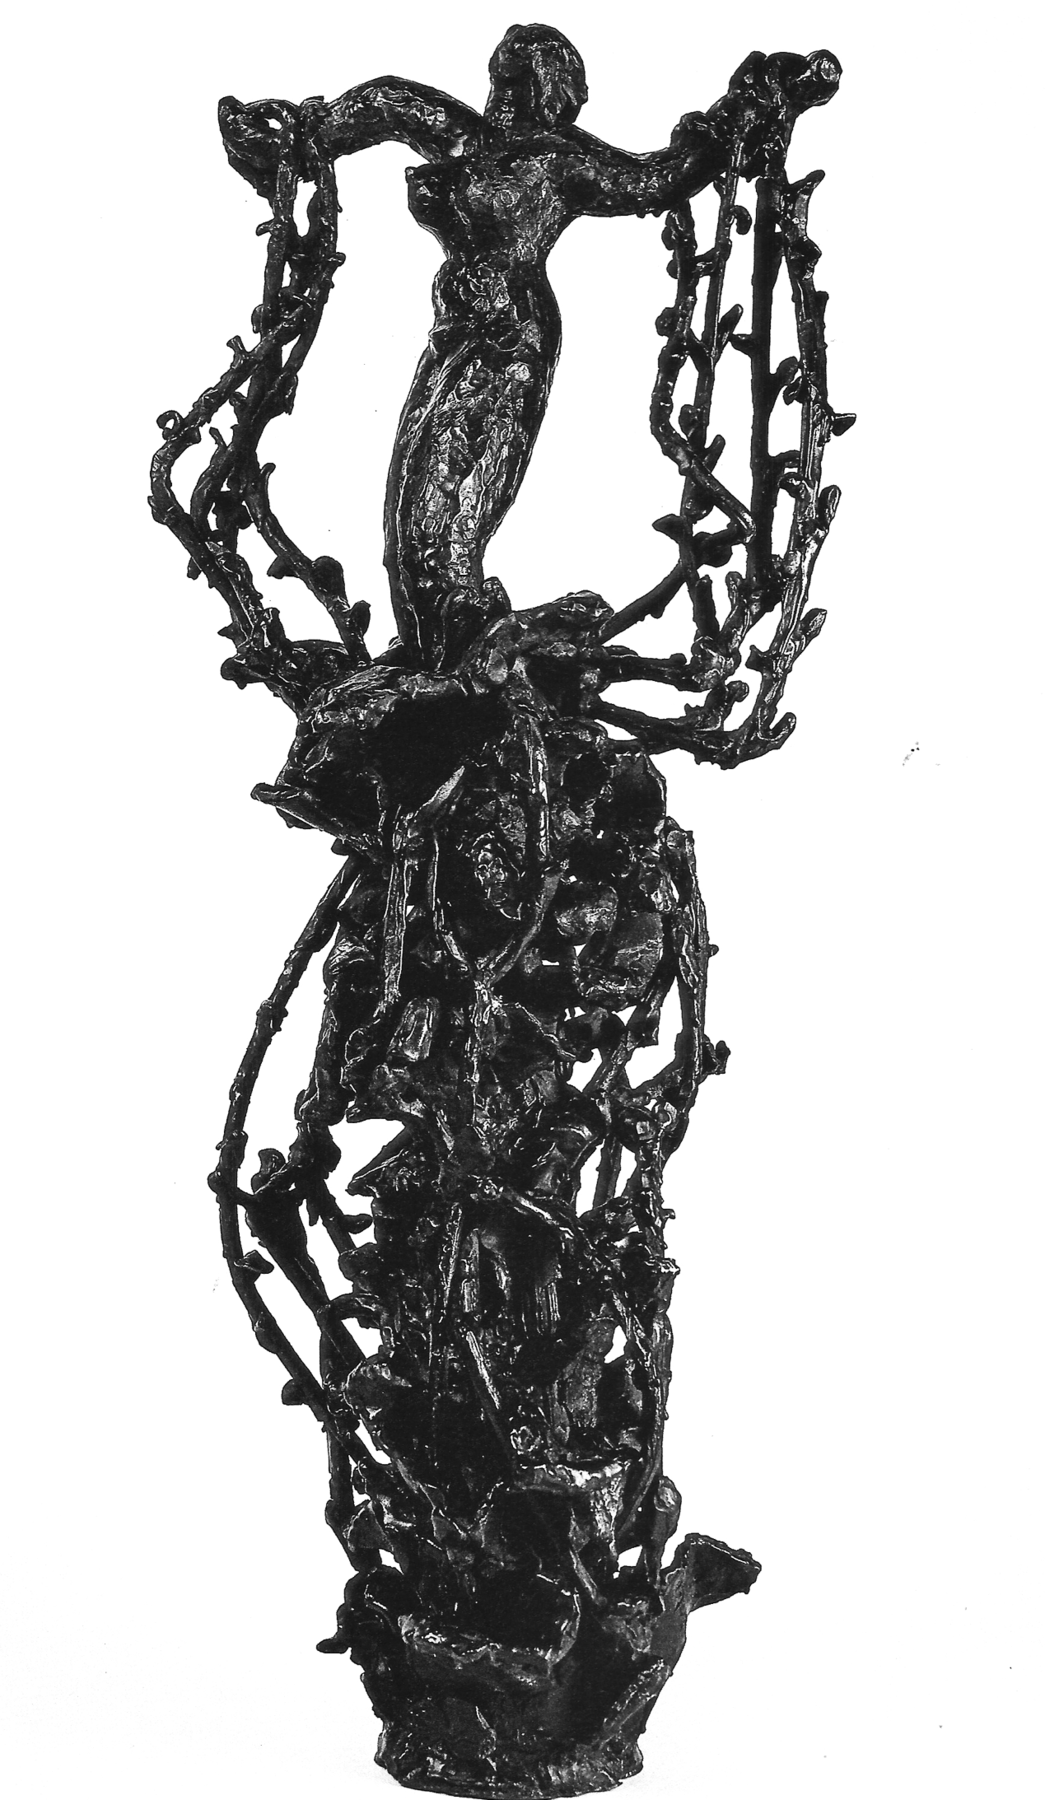 Fotografia. Escultura escura que apresenta uma mulher em pé sobre uma estrutura alta com muitos ramos entrelaçados. Ela está com os braços abertos para o lado e com os pulsos presos pelos ramos.